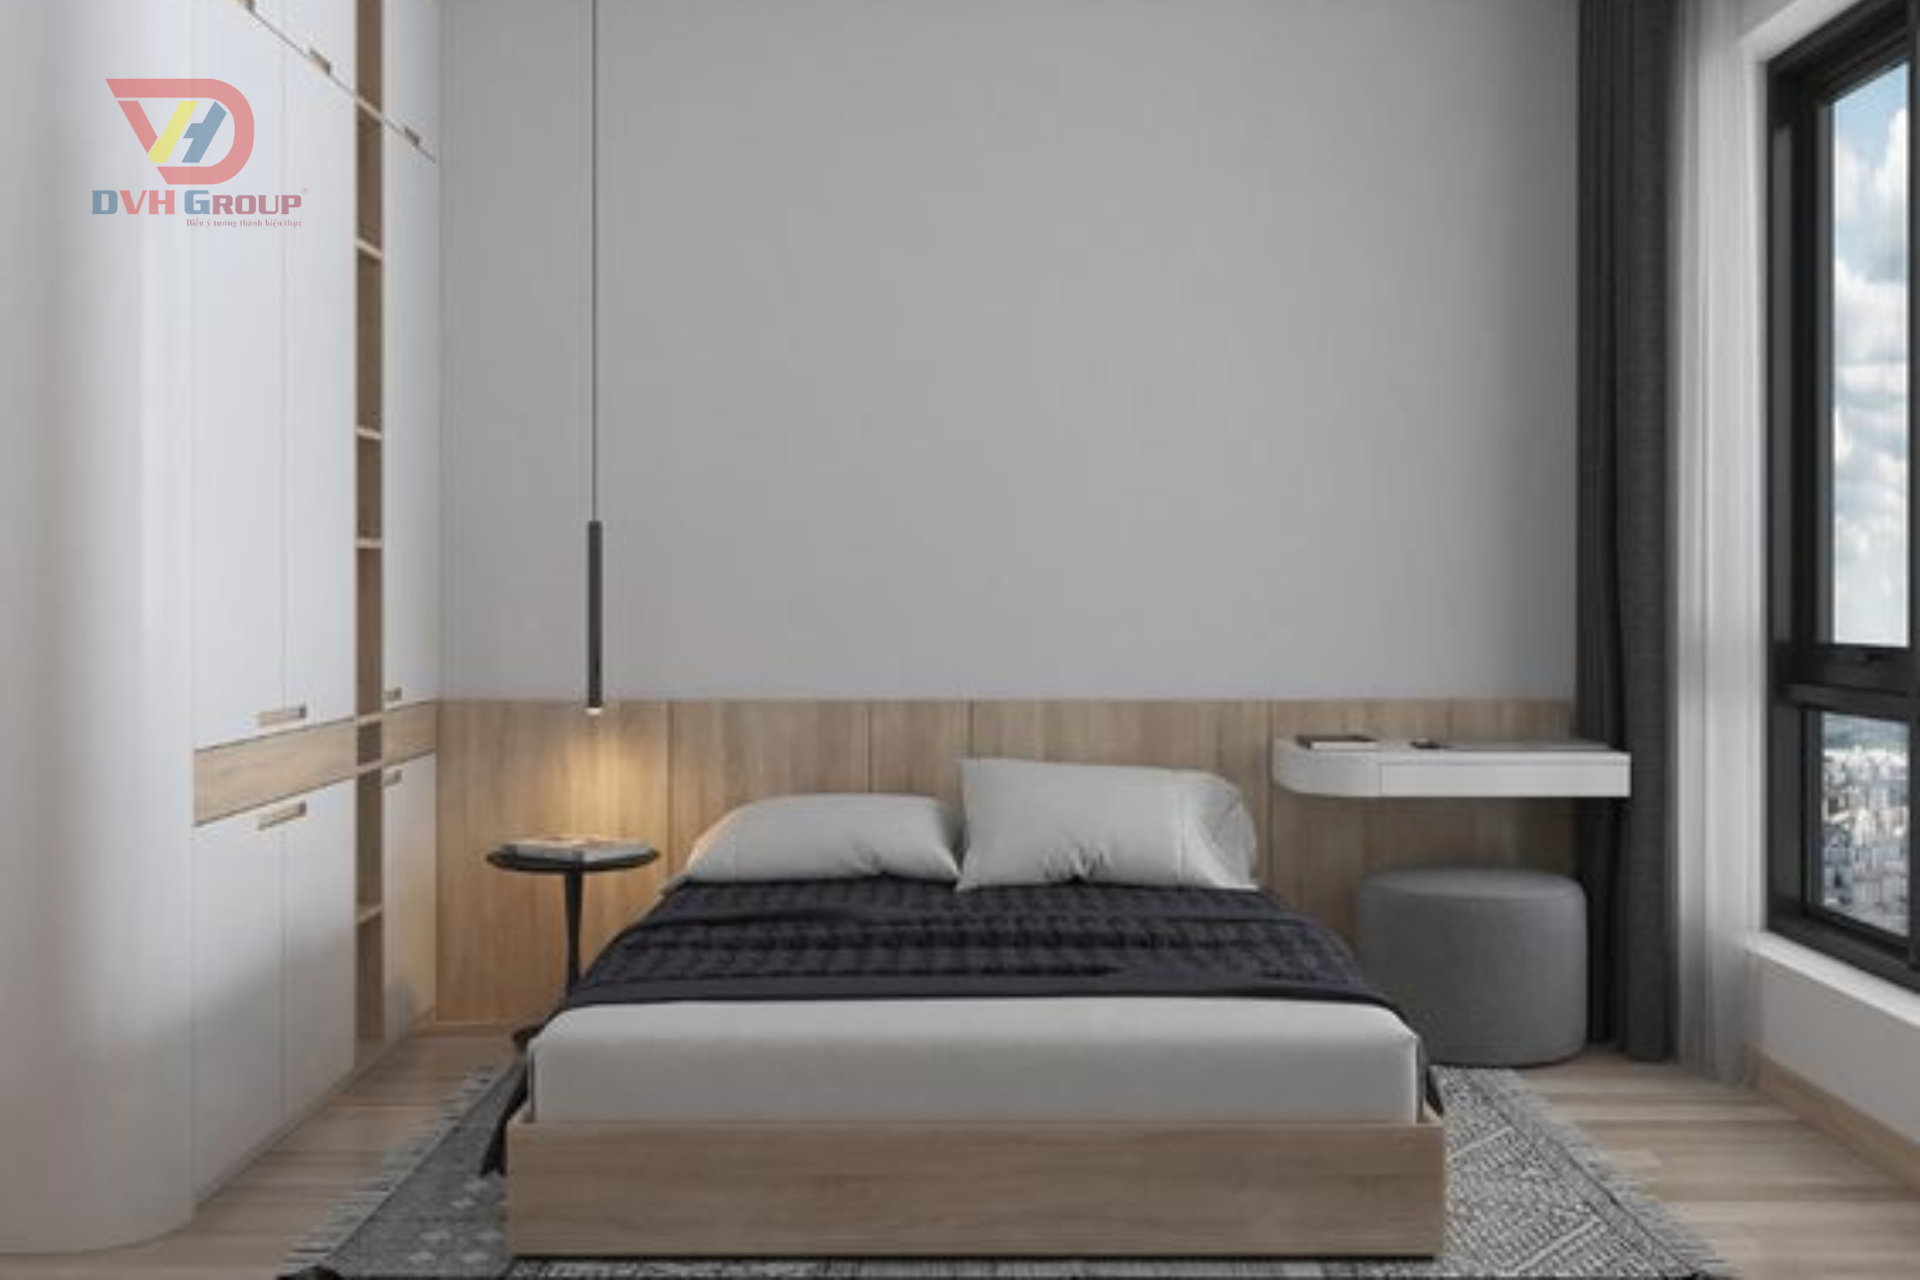 Mẫu phòng ngủ hiện đại sang trọng, đơn giản bố trí công năng hợp lí